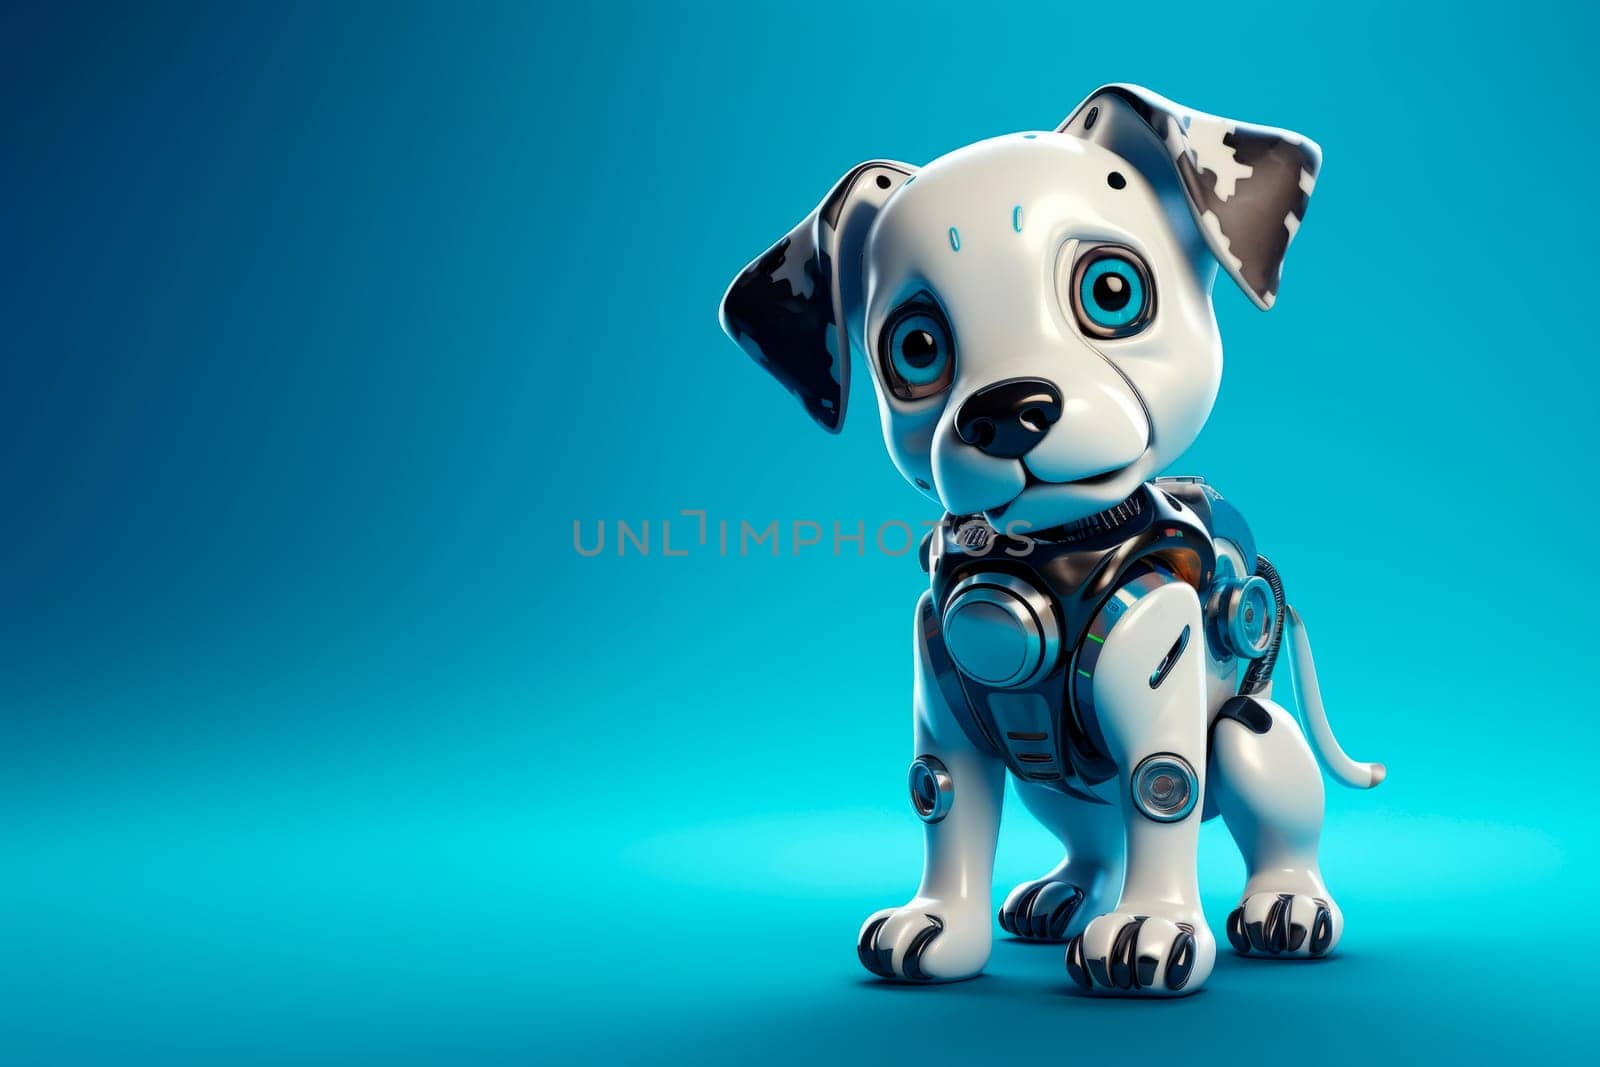 Toy robot dog on a blue background by Spirina